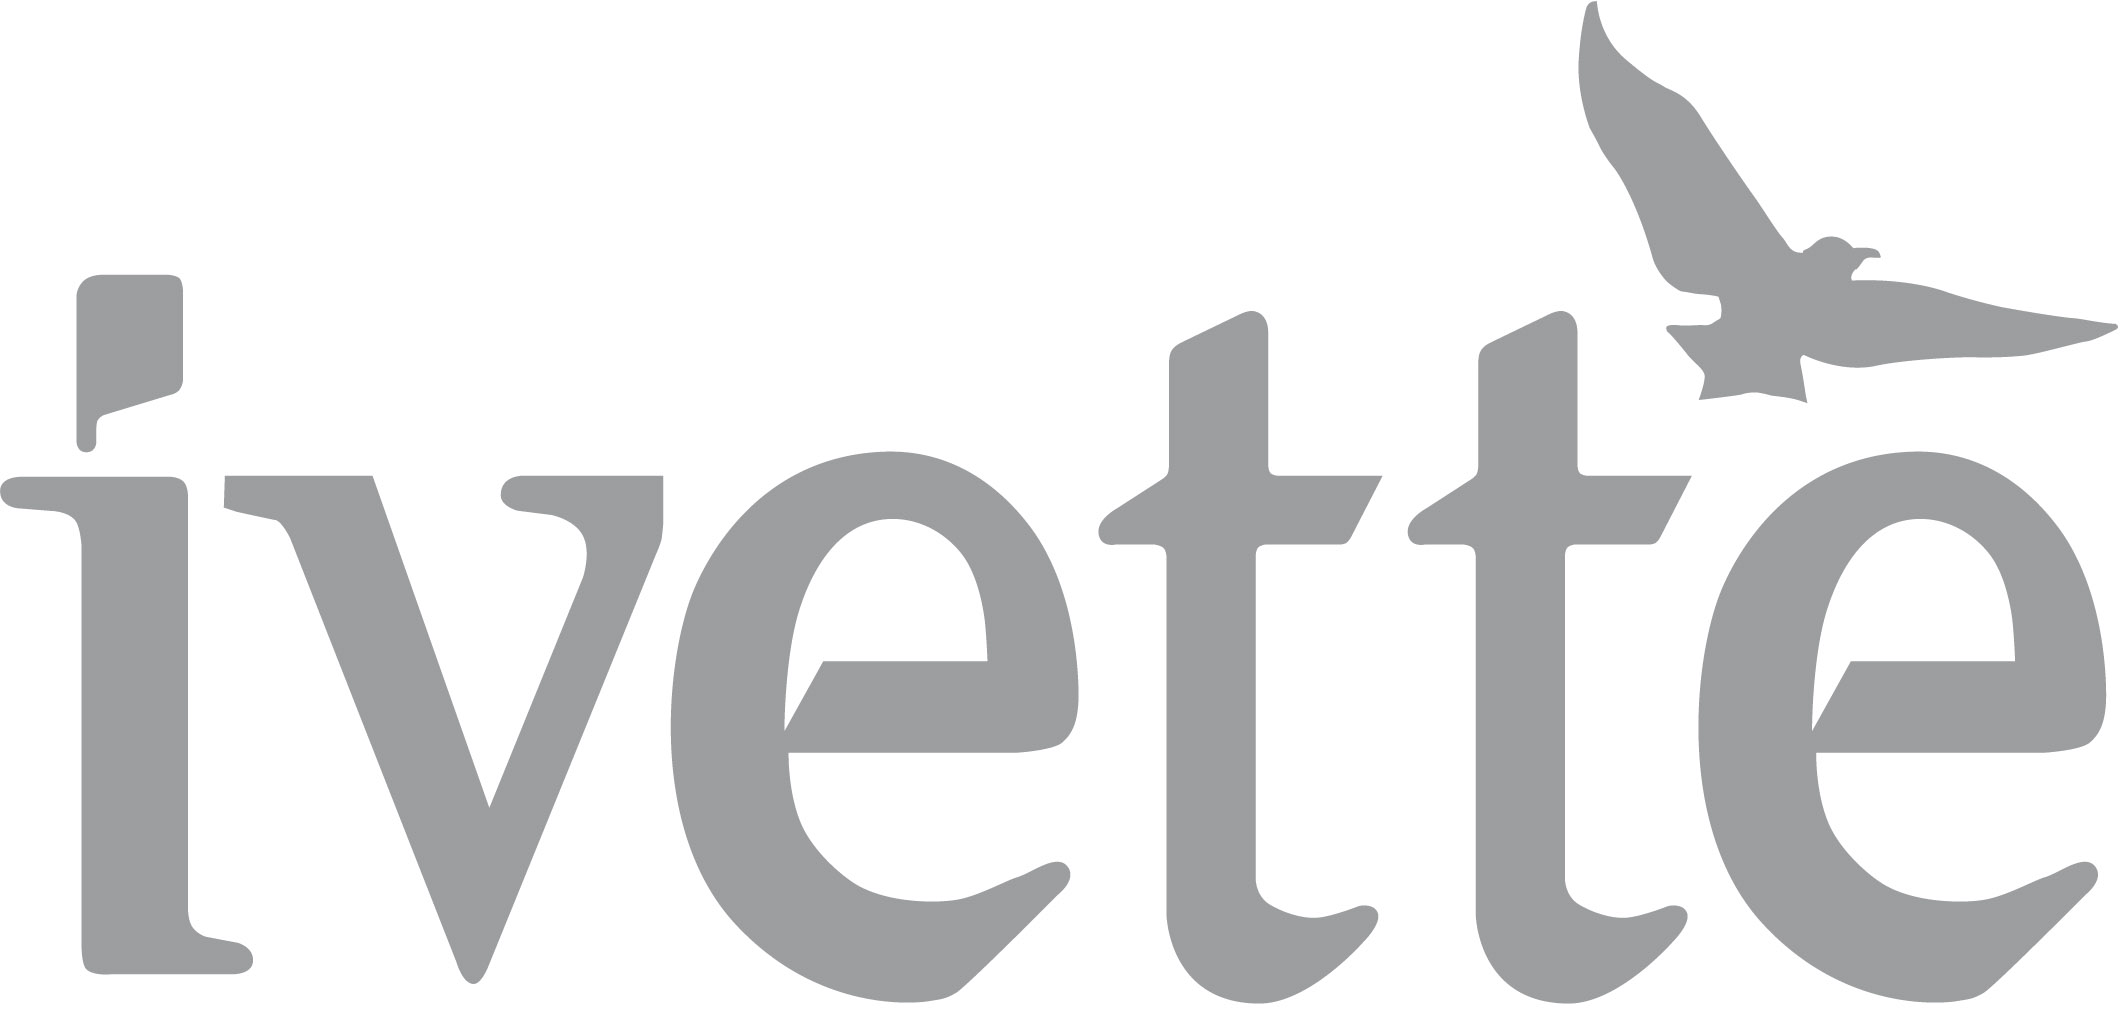 Ivette  logo